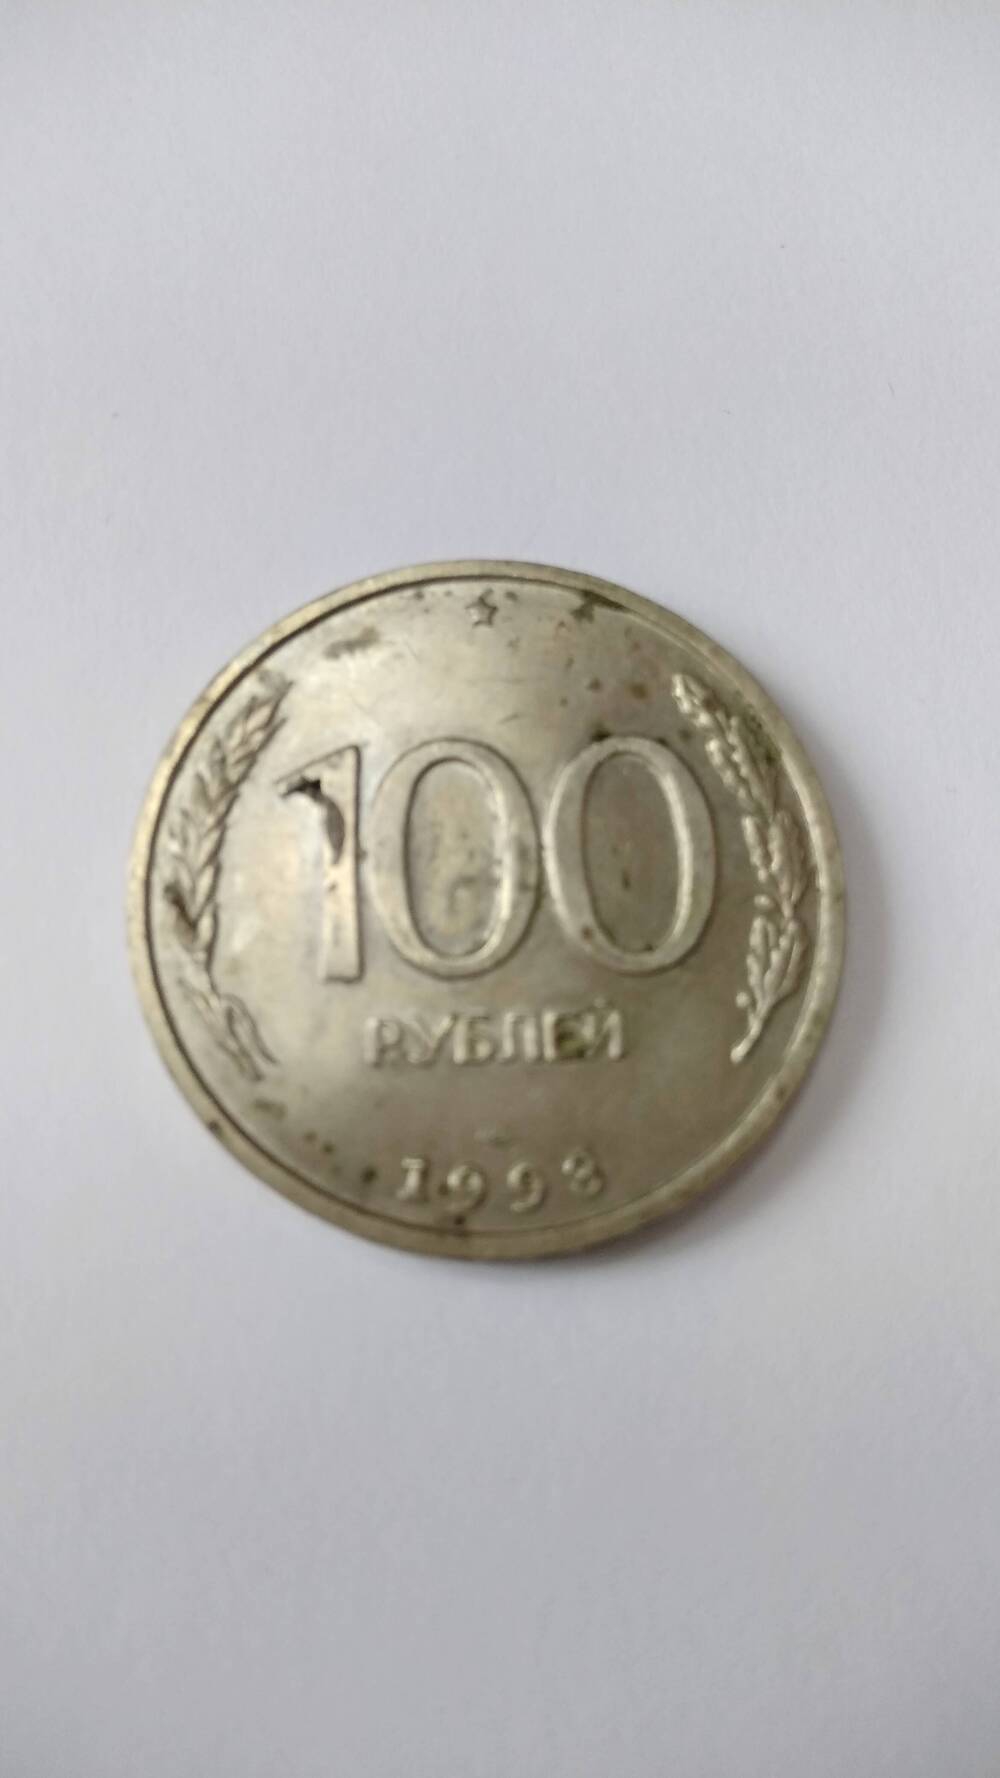 Монета России образца 1993 года. 100 рублей.